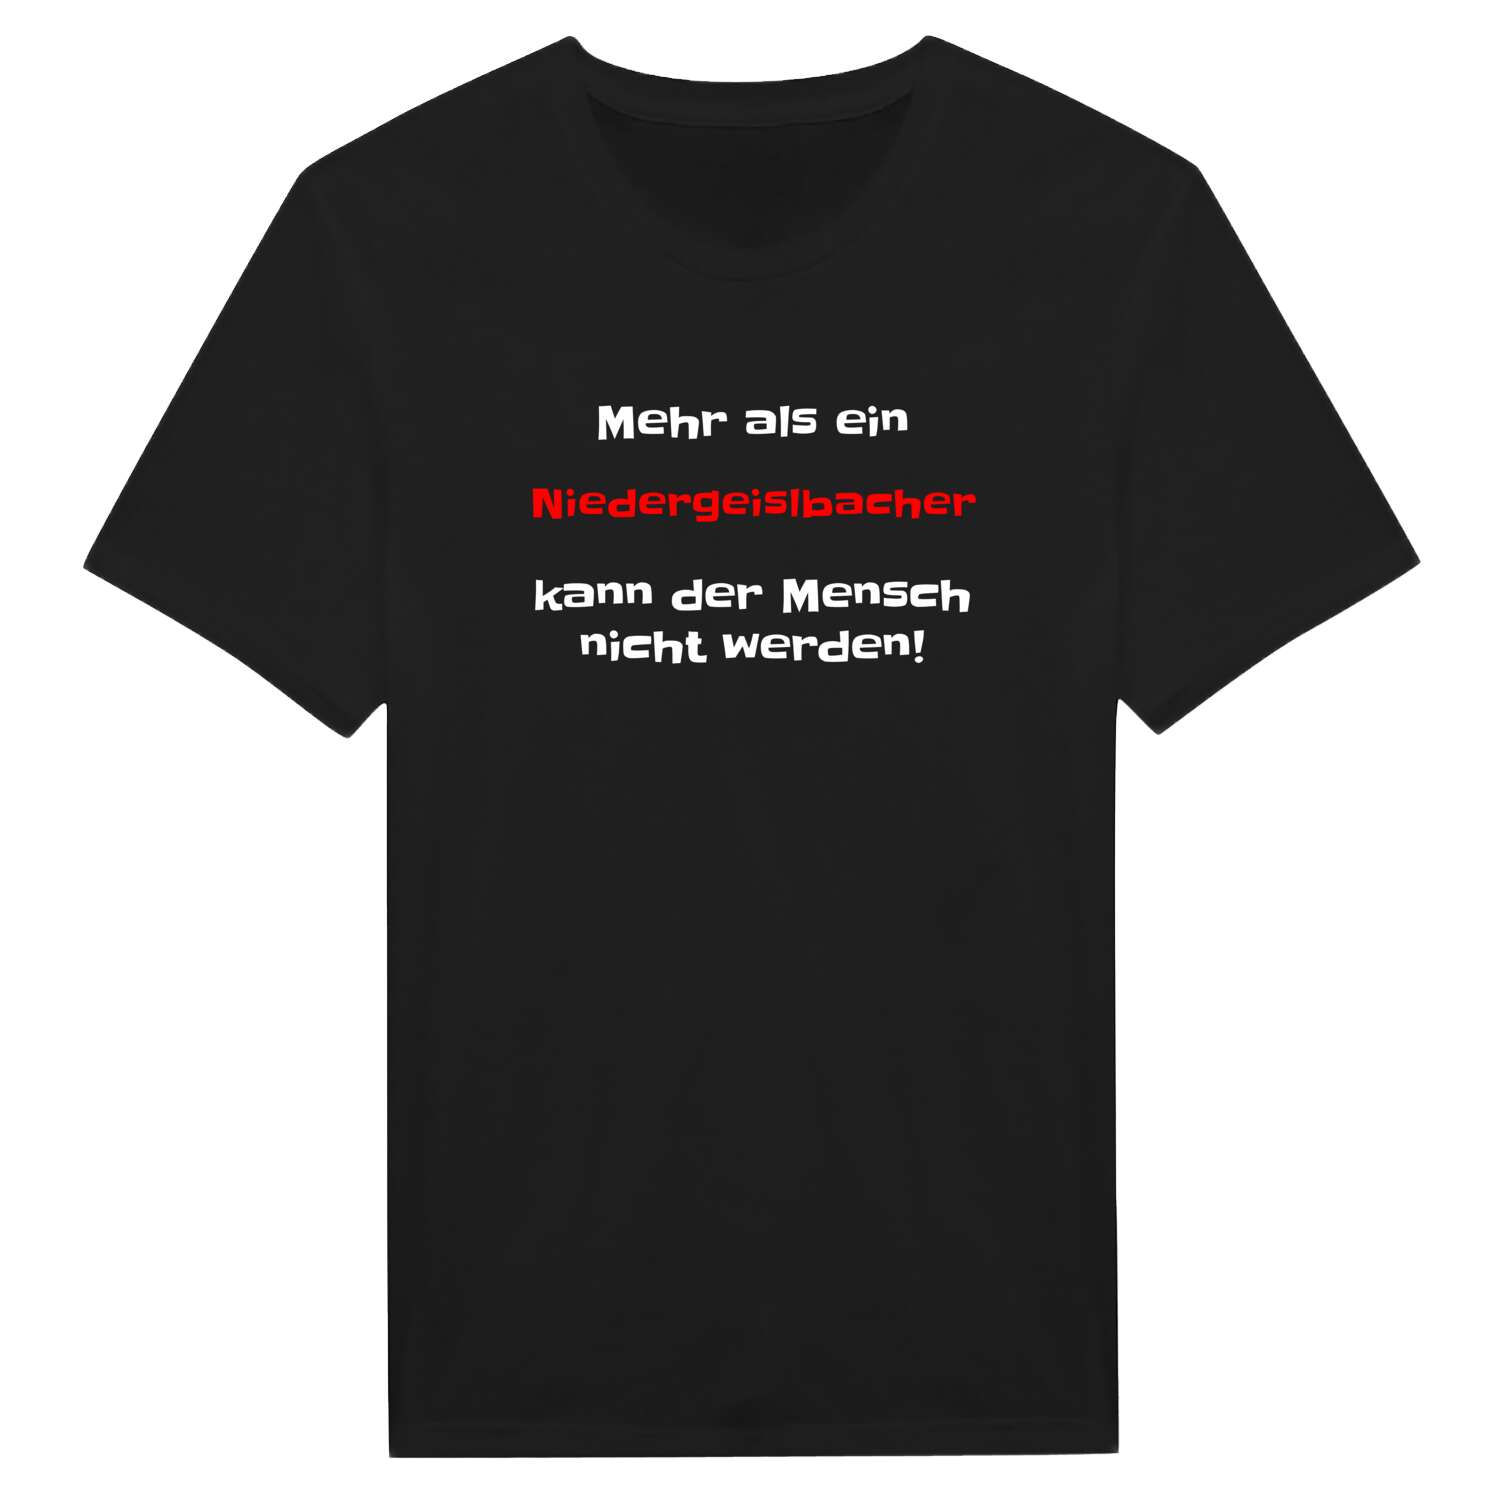 Niedergeislbach T-Shirt »Mehr als ein«